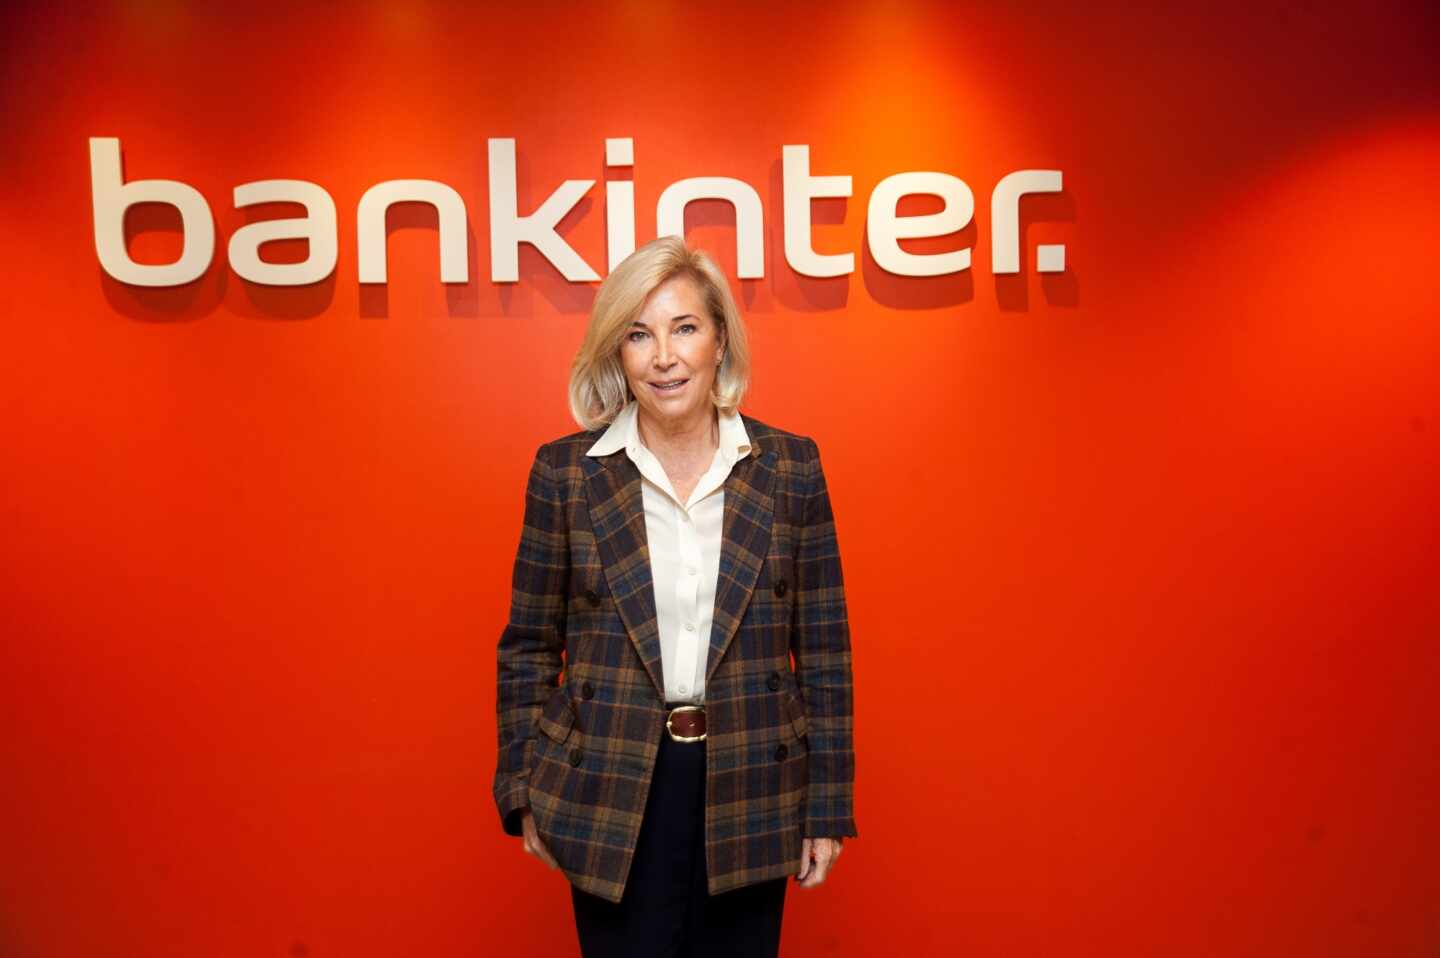 María Dolores Dancausa, consejera delegada de Bankinter, presenta los resultados del tercer trimestre de 2020 del banco.